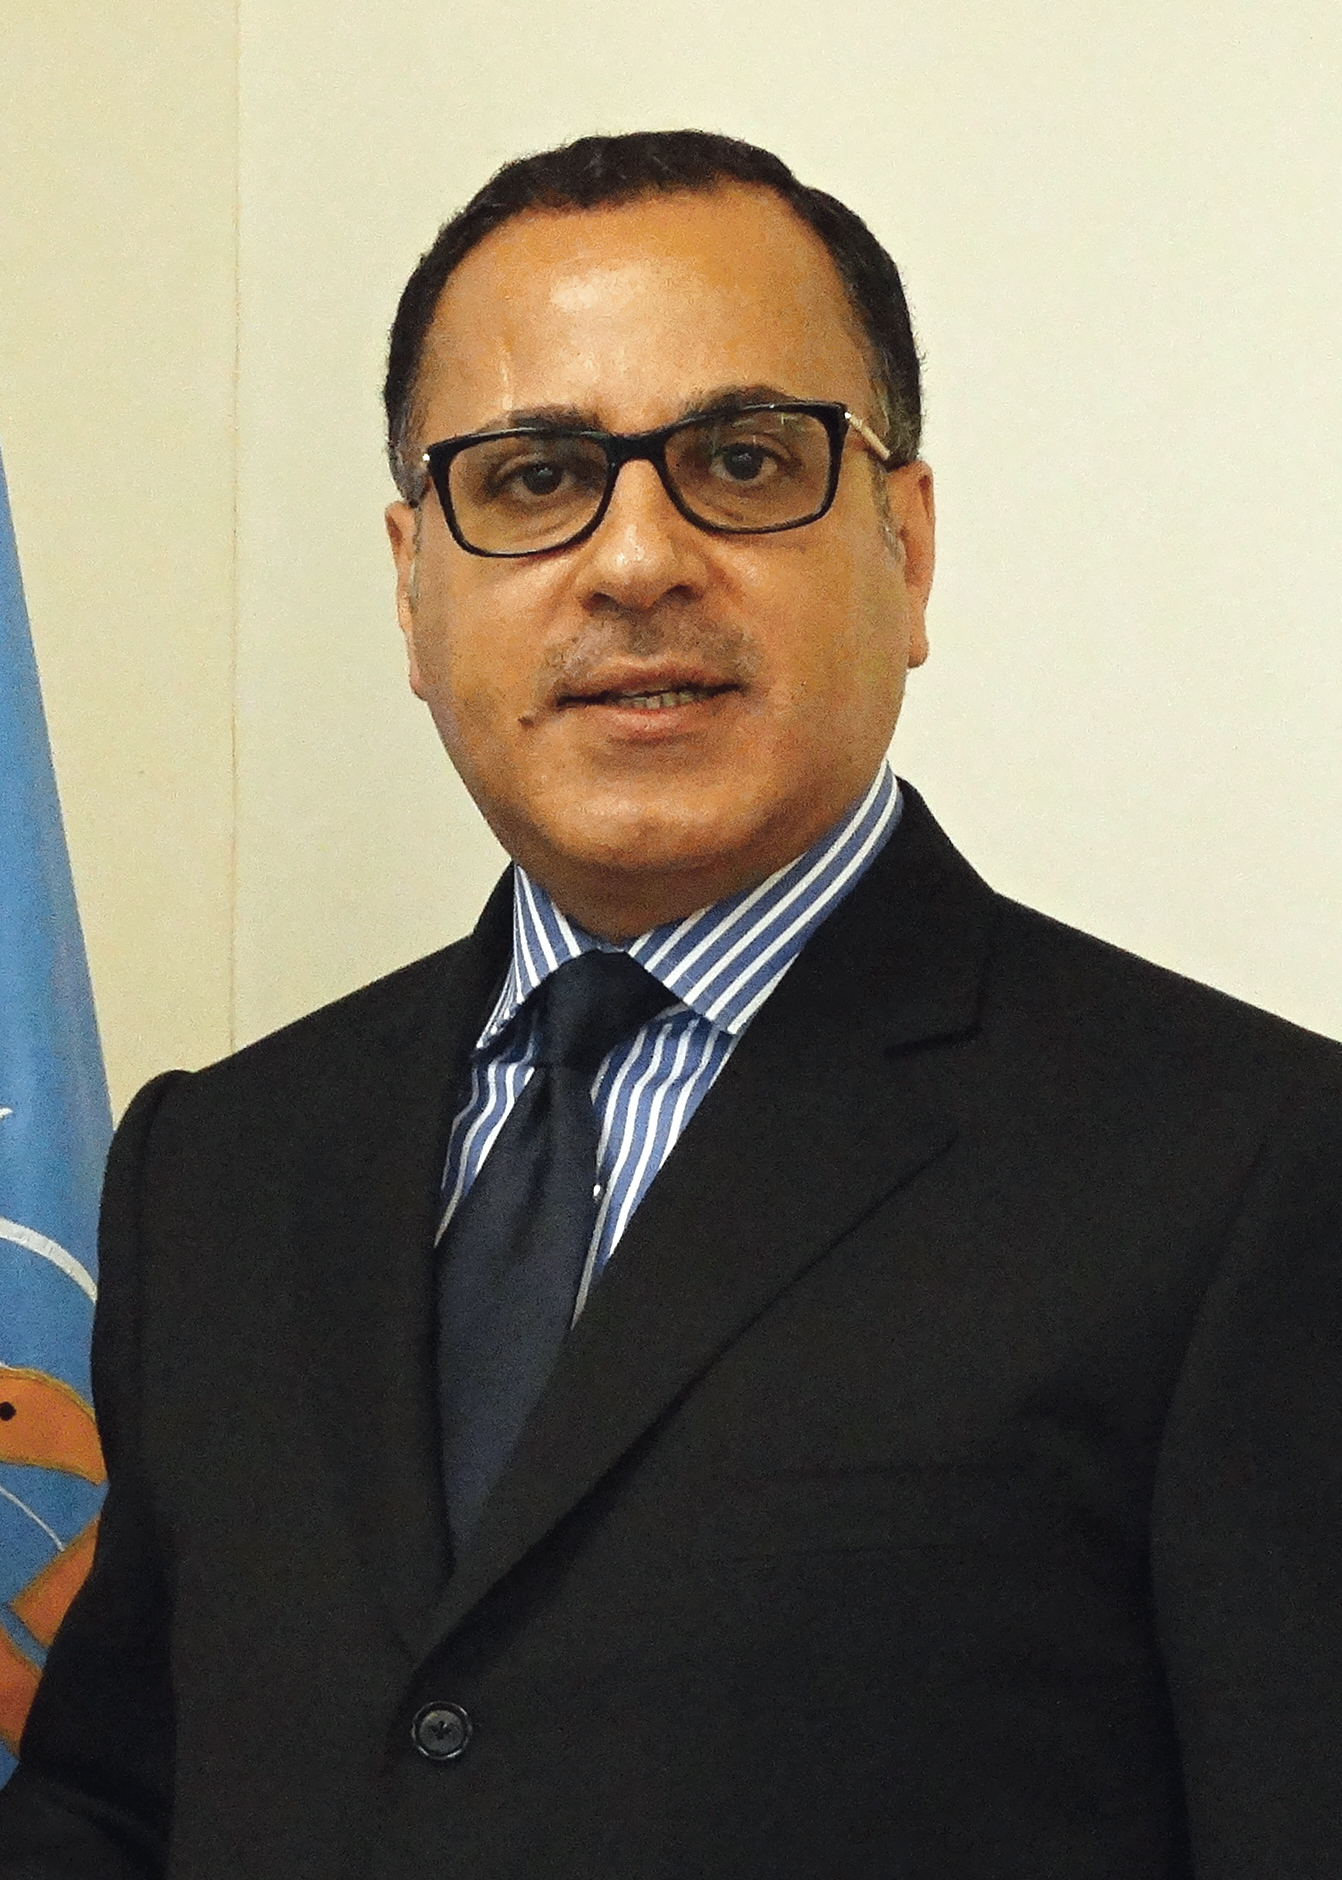 مندوب دولة الكويت الدائم لدى الامم المتحدة والمنظمات الدولية في جنيف السفير جمال الغنيم